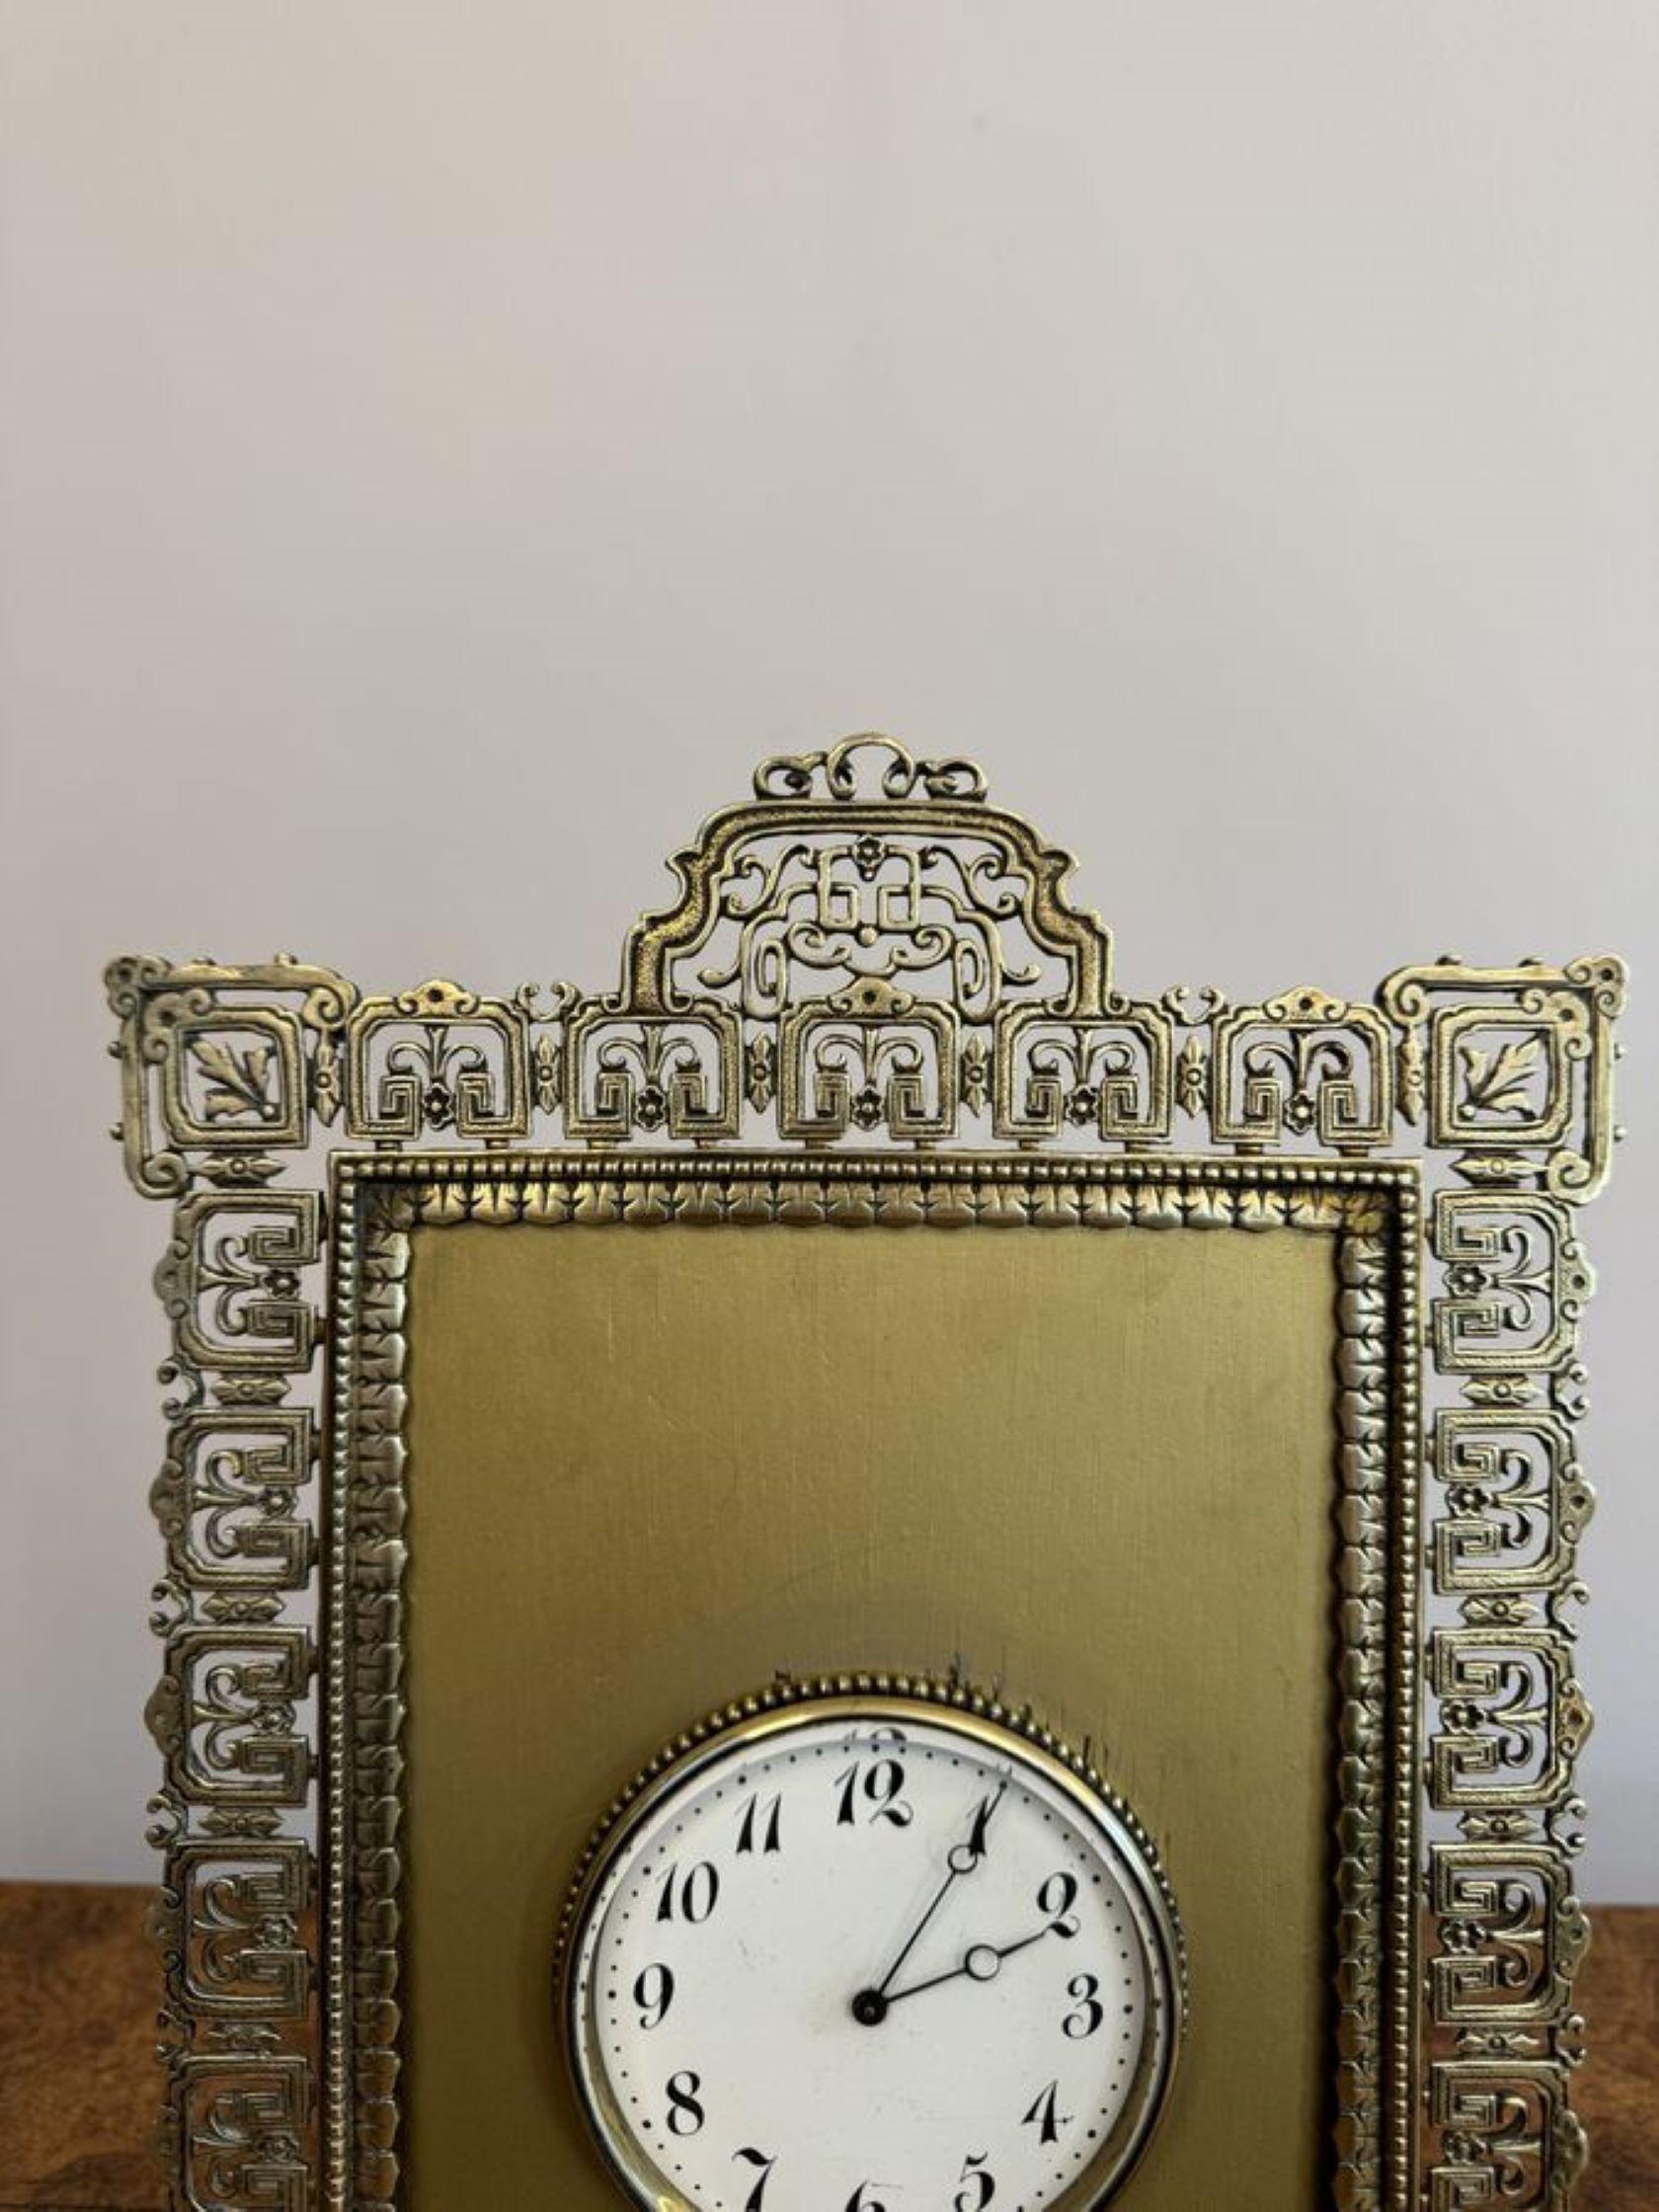 Élégante horloge de bureau victorienne en laiton orné, avec un cadre en laiton orné, un cadran circulaire au centre avec les aiguilles d'origine et un mouvement de huit jours. 

D. 1880